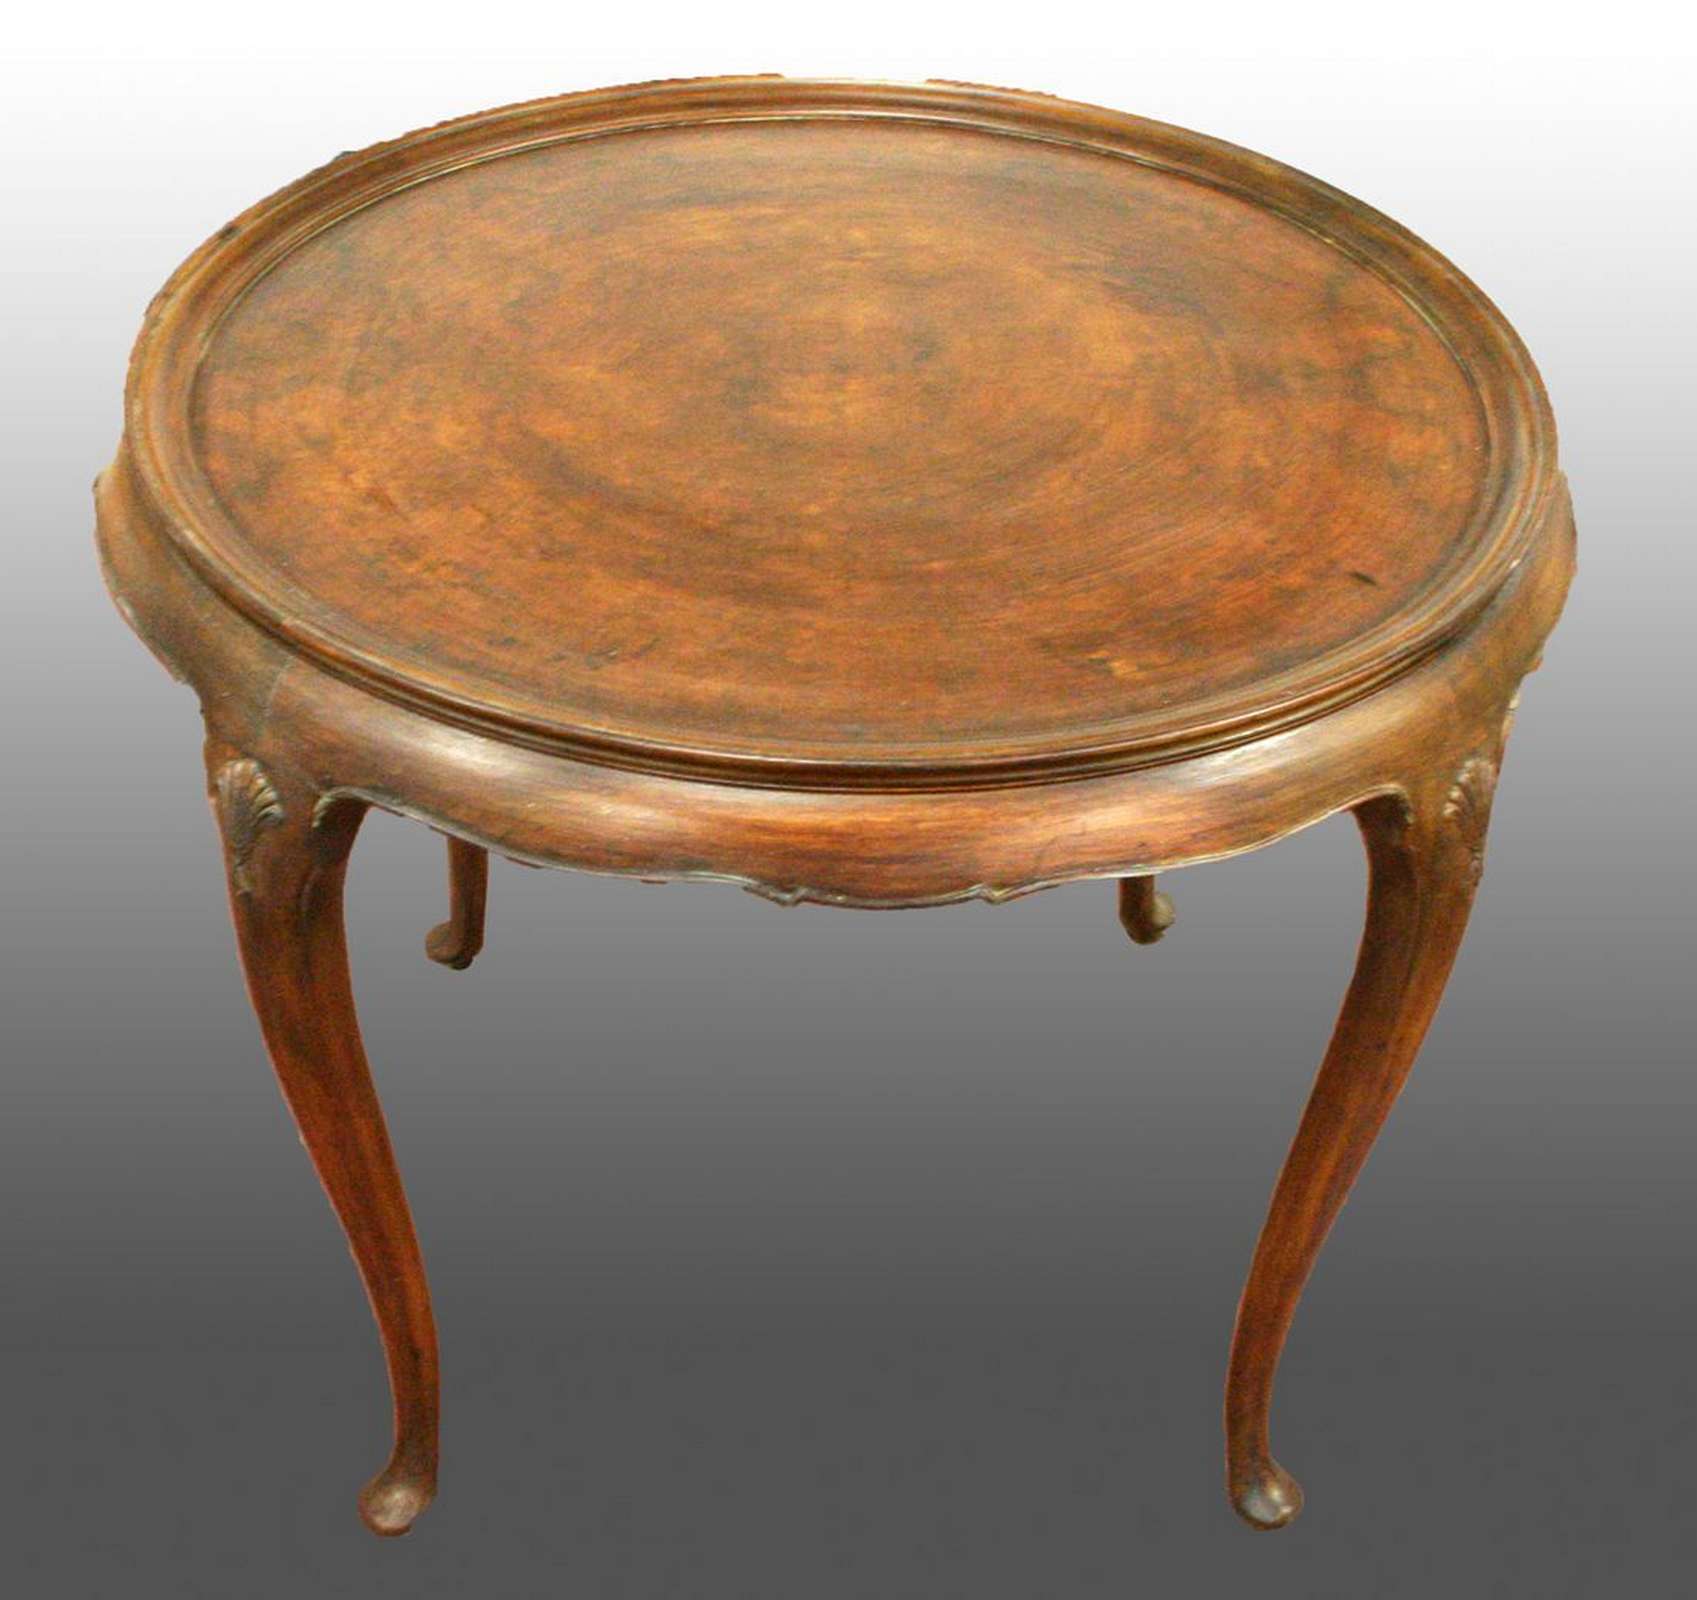 Antico tavolo in legno. Epoca 1800. - 1